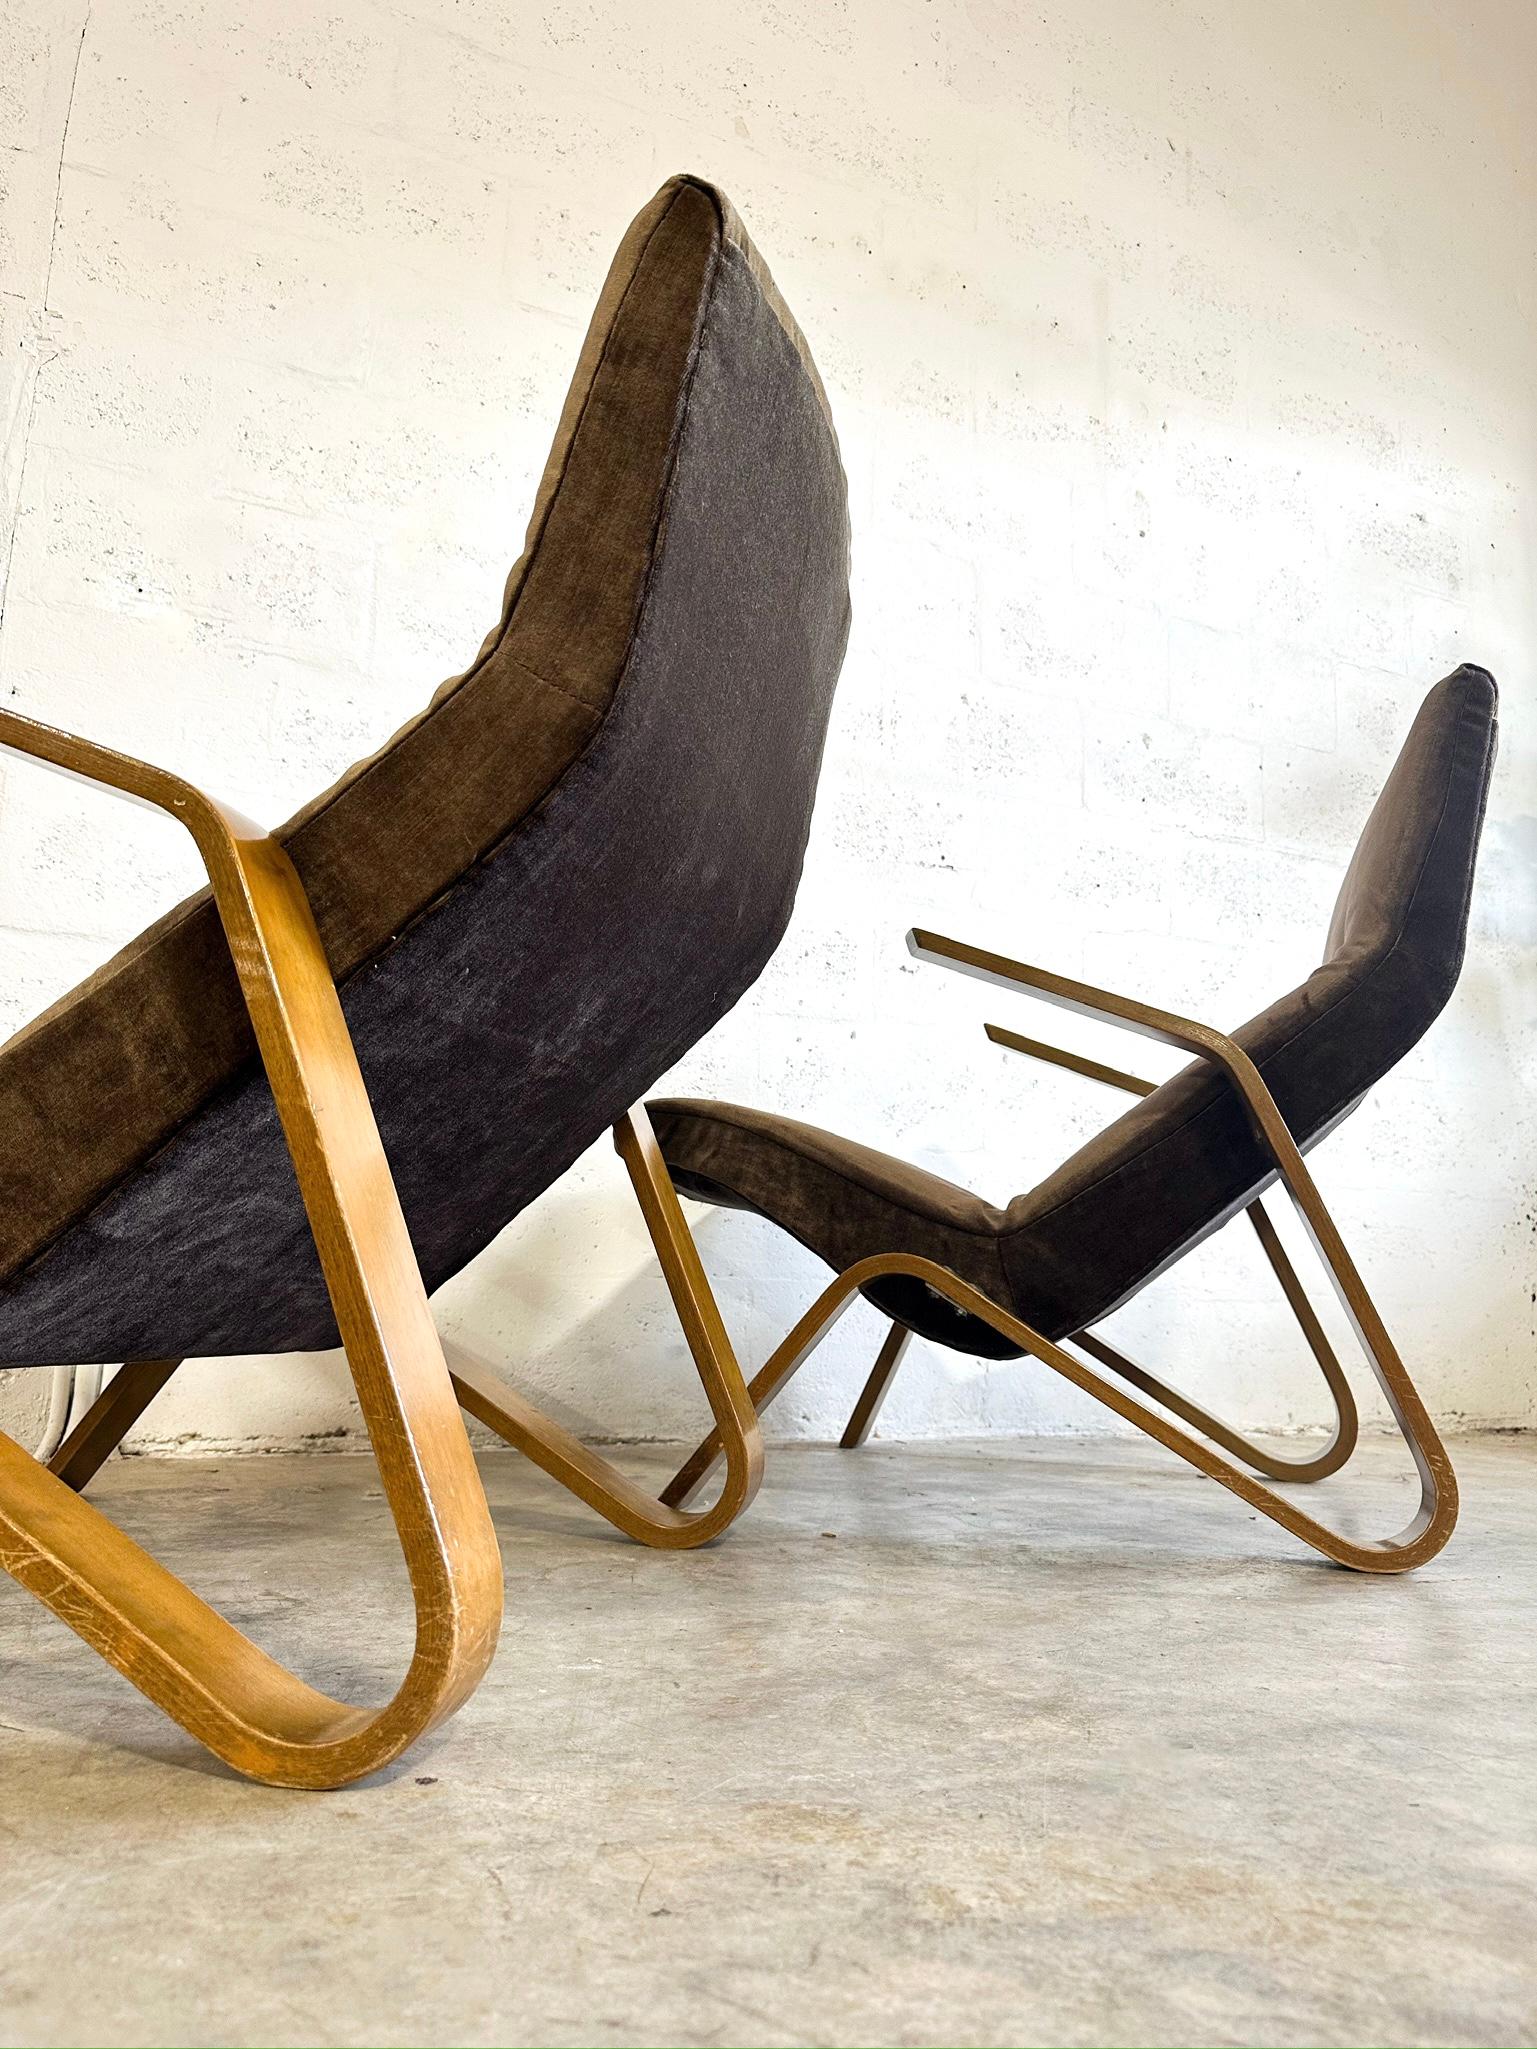 Chaises Grasshoper conçues par Knoll et réalisées par Eero Saarinen. Il s'agit de la première chaise créée par Saarinen pour Knoll dans les années 40.